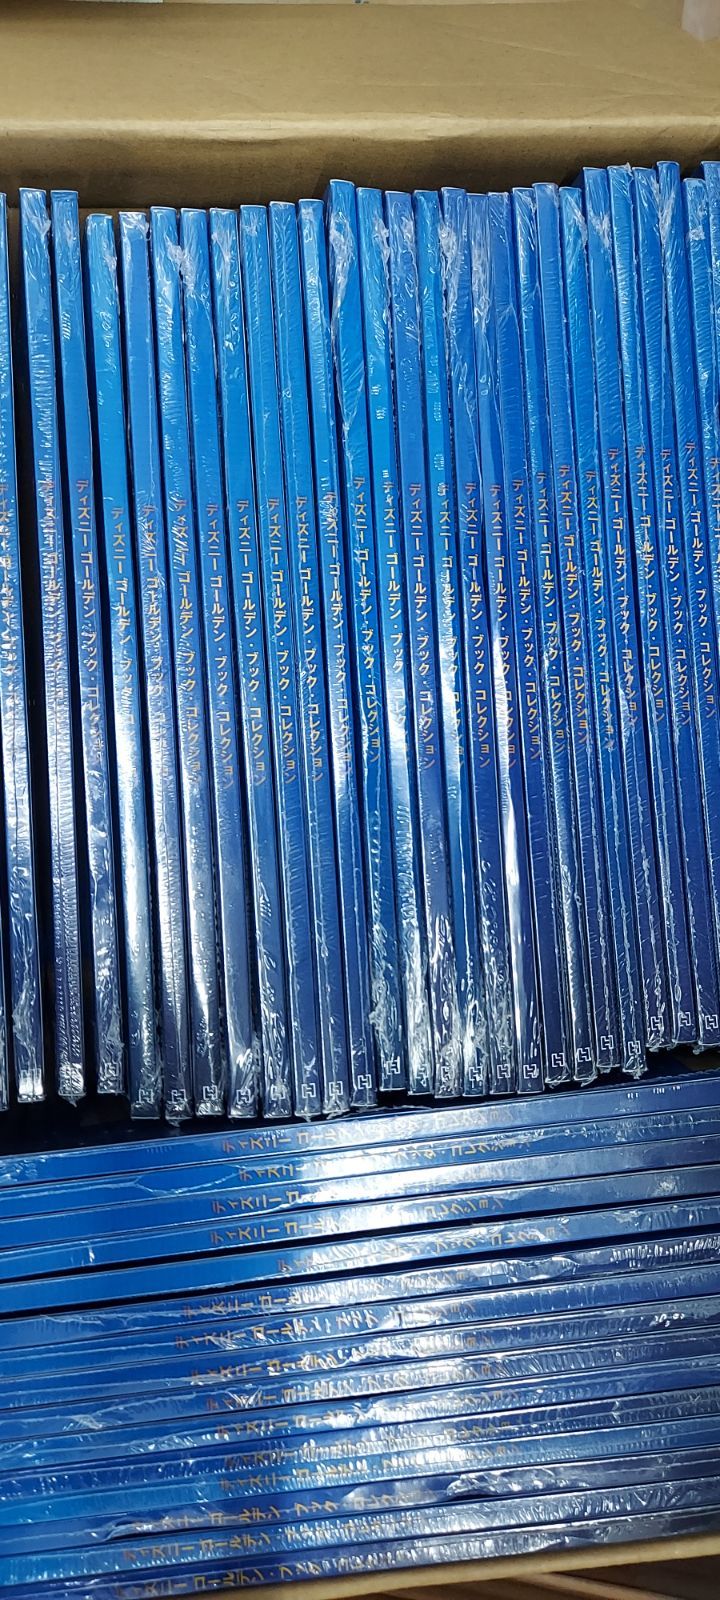 ディズニー ゴールデンブックコレクション １～１４９巻セット